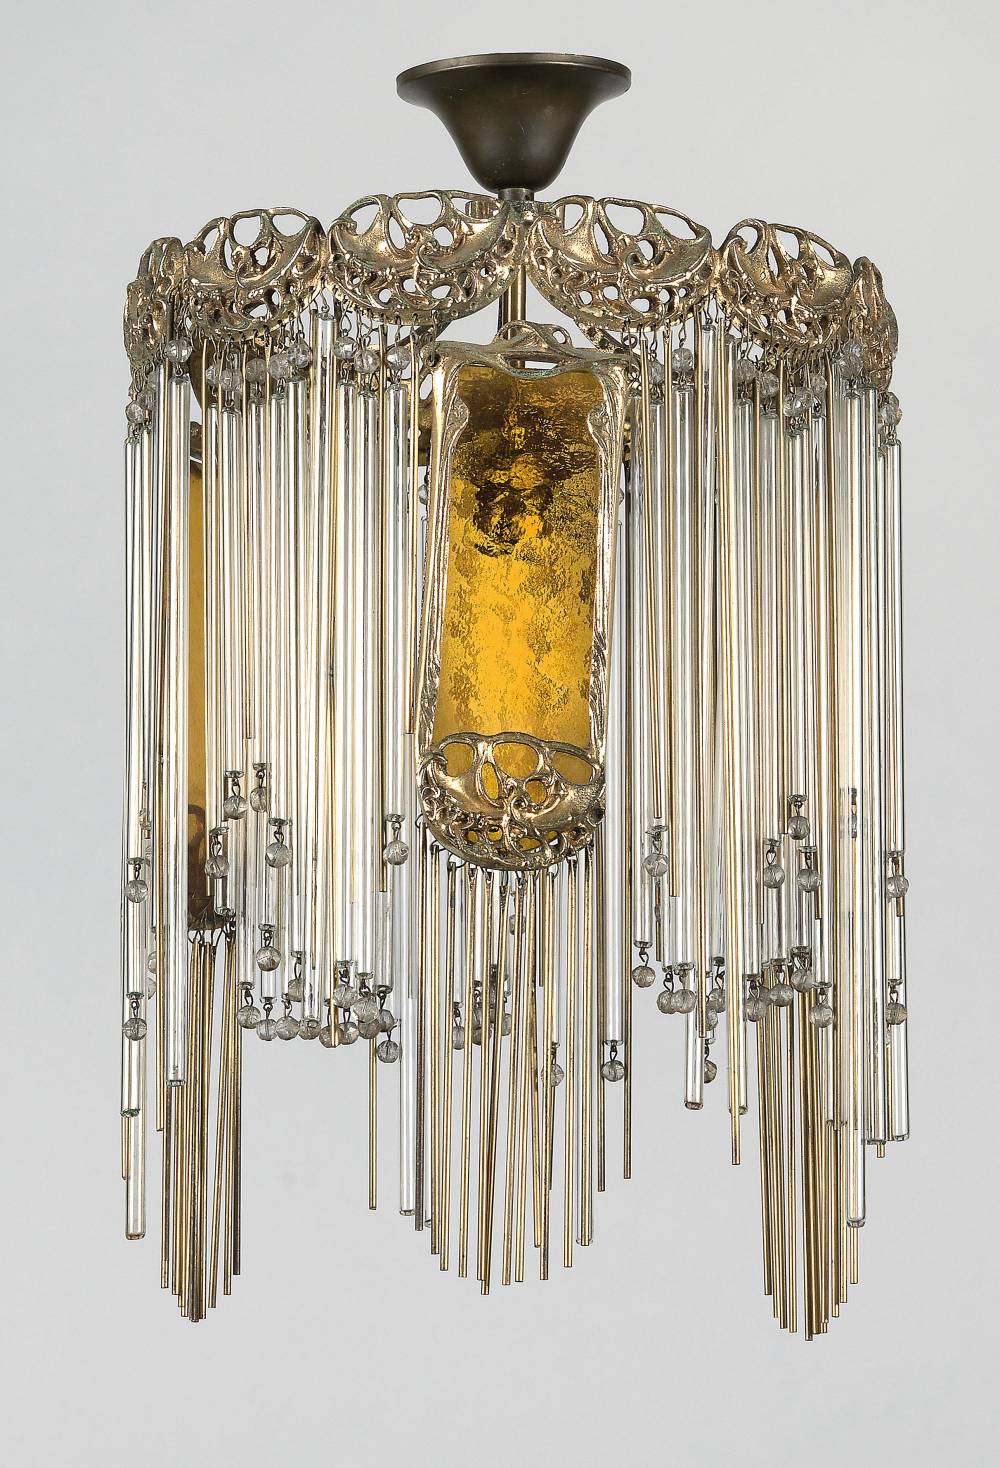 Hector guimard  large chandelier  1900